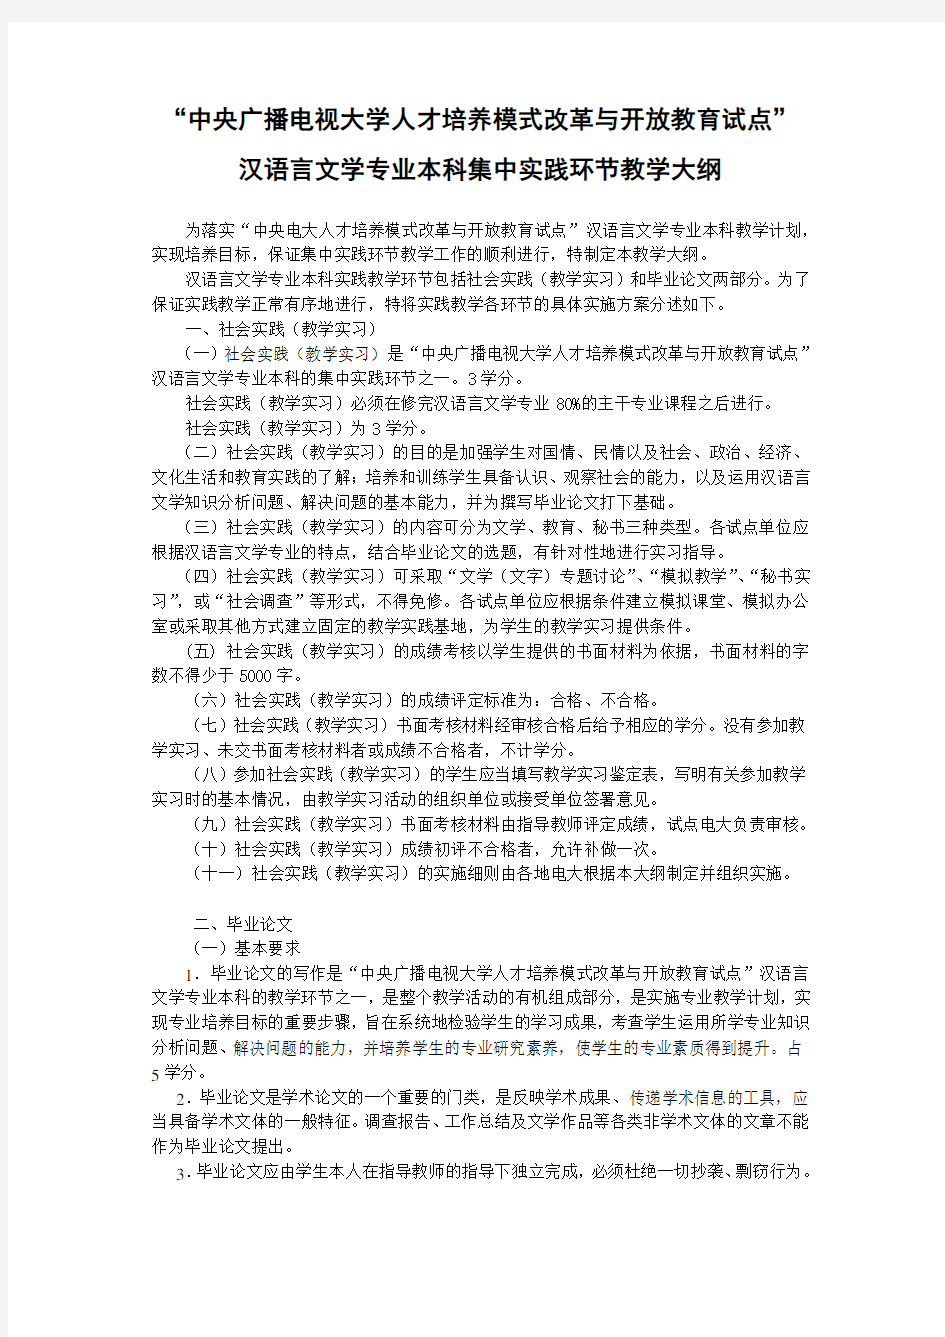 汉语言文学专业本科集中实践环节教学大纲